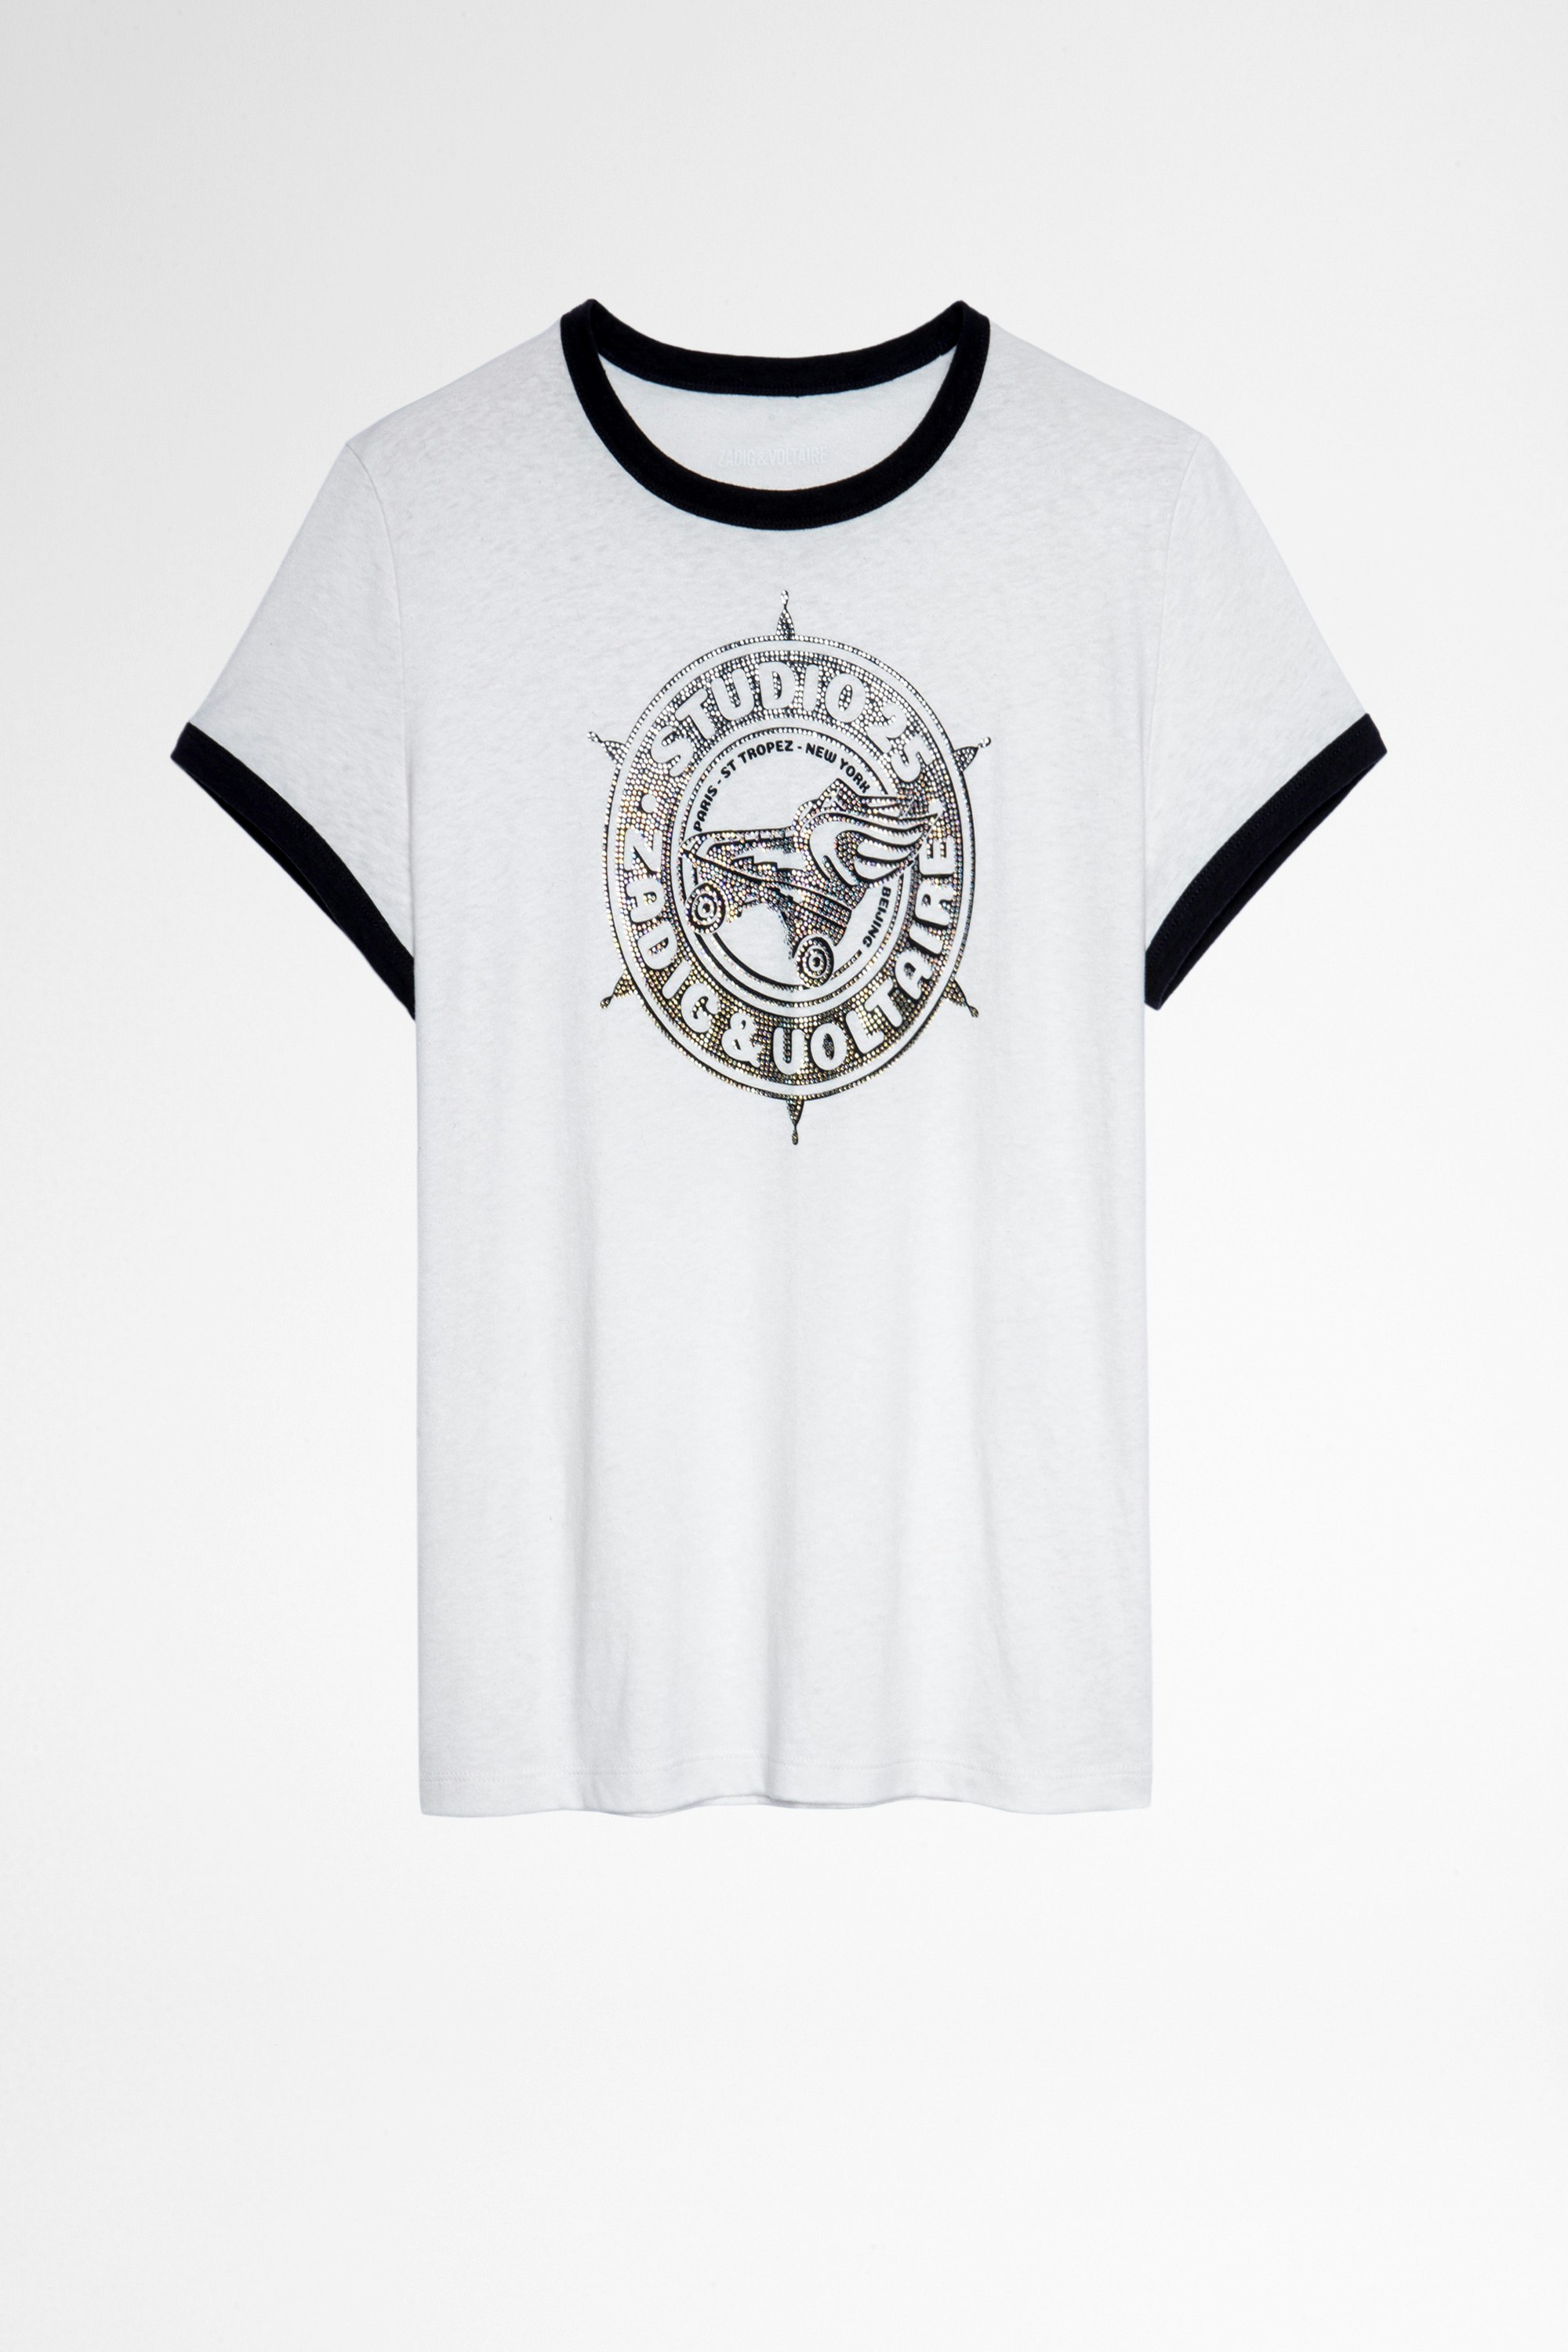 T-Shirt Zoe Studio Strass T-shirt en coton vert imprimé studio 25 recouvert de cristaux Femme